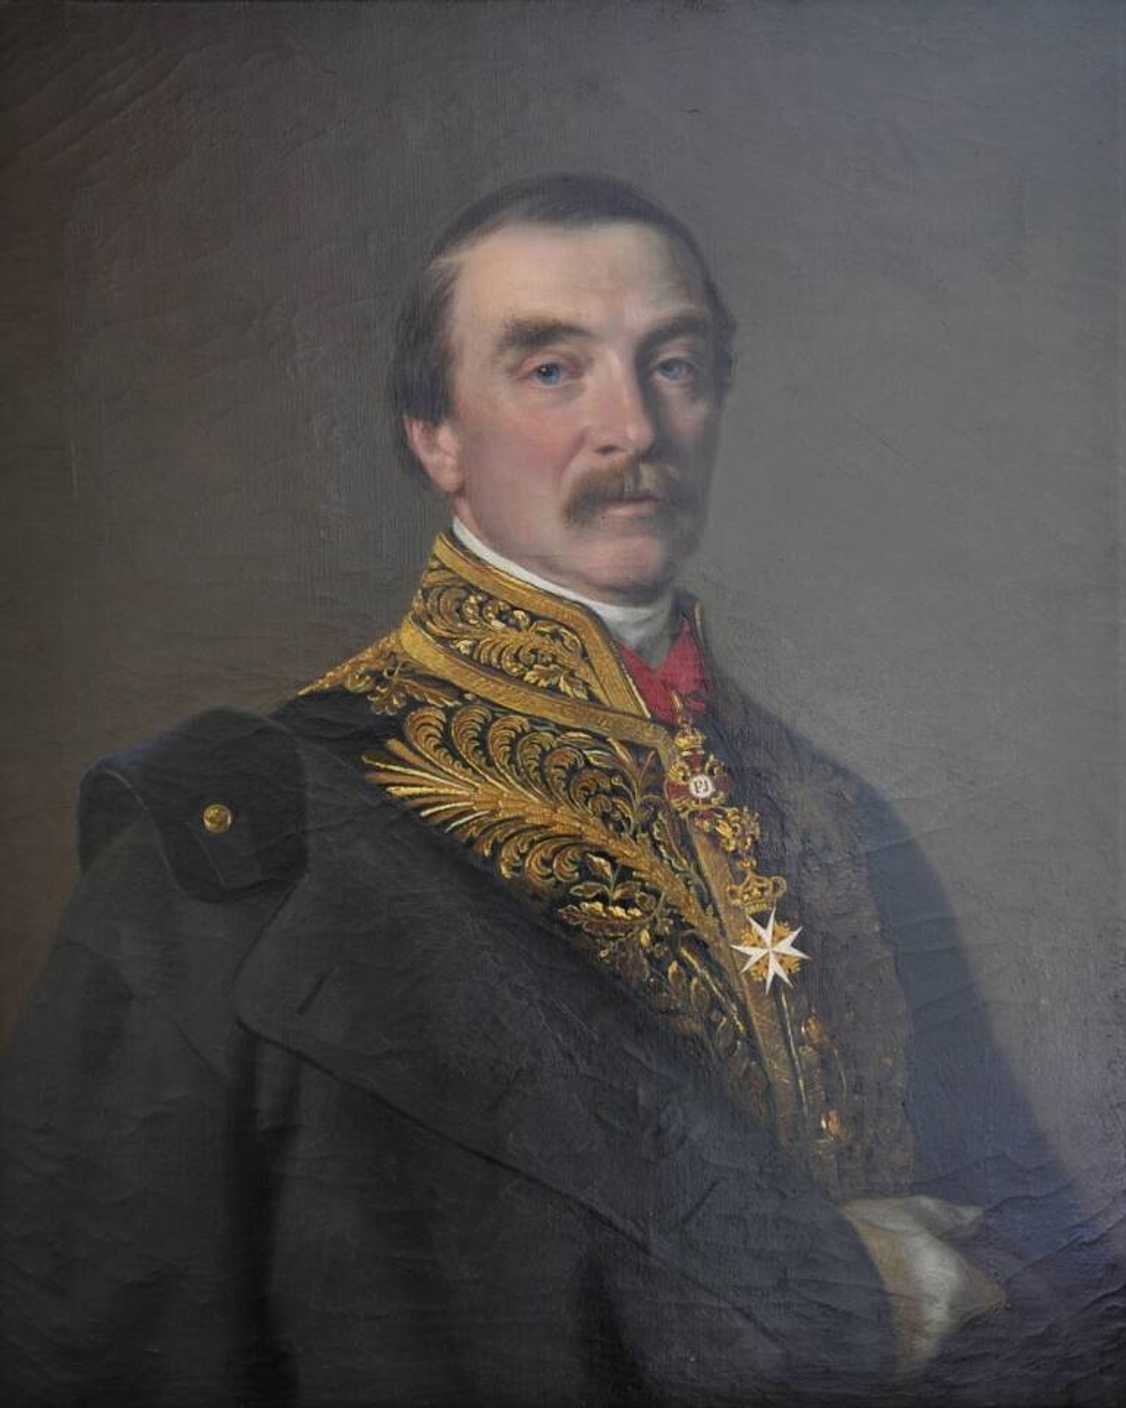 Albert hrabě Nostitz-Rieneck
